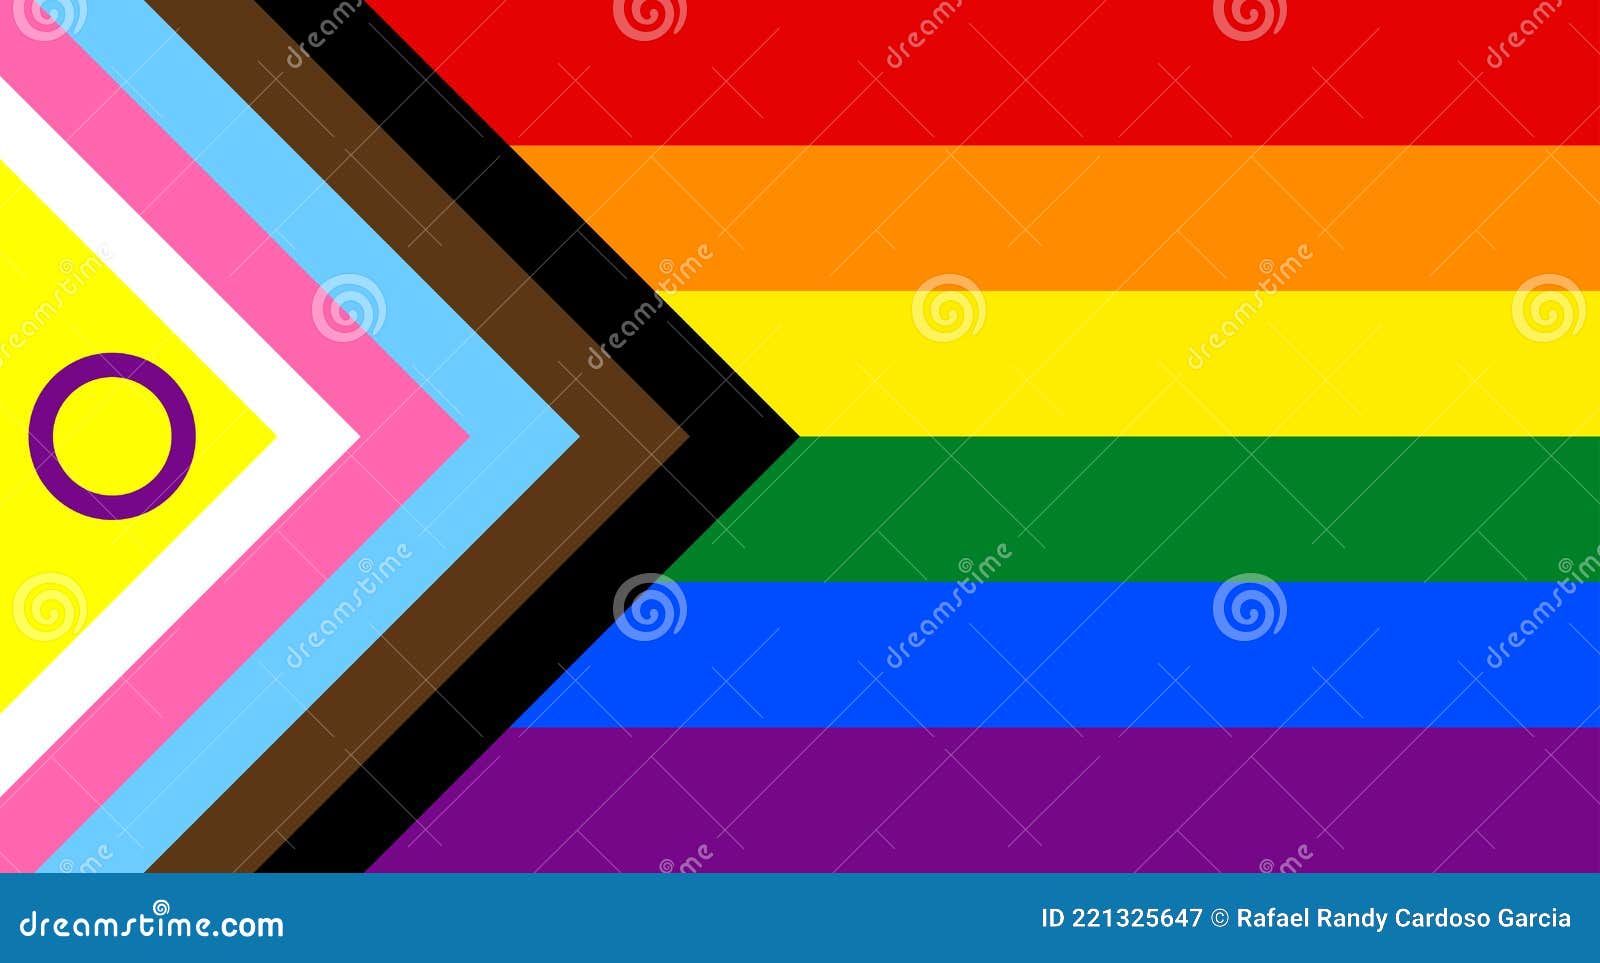 new inclusive lgbtqi+ flag